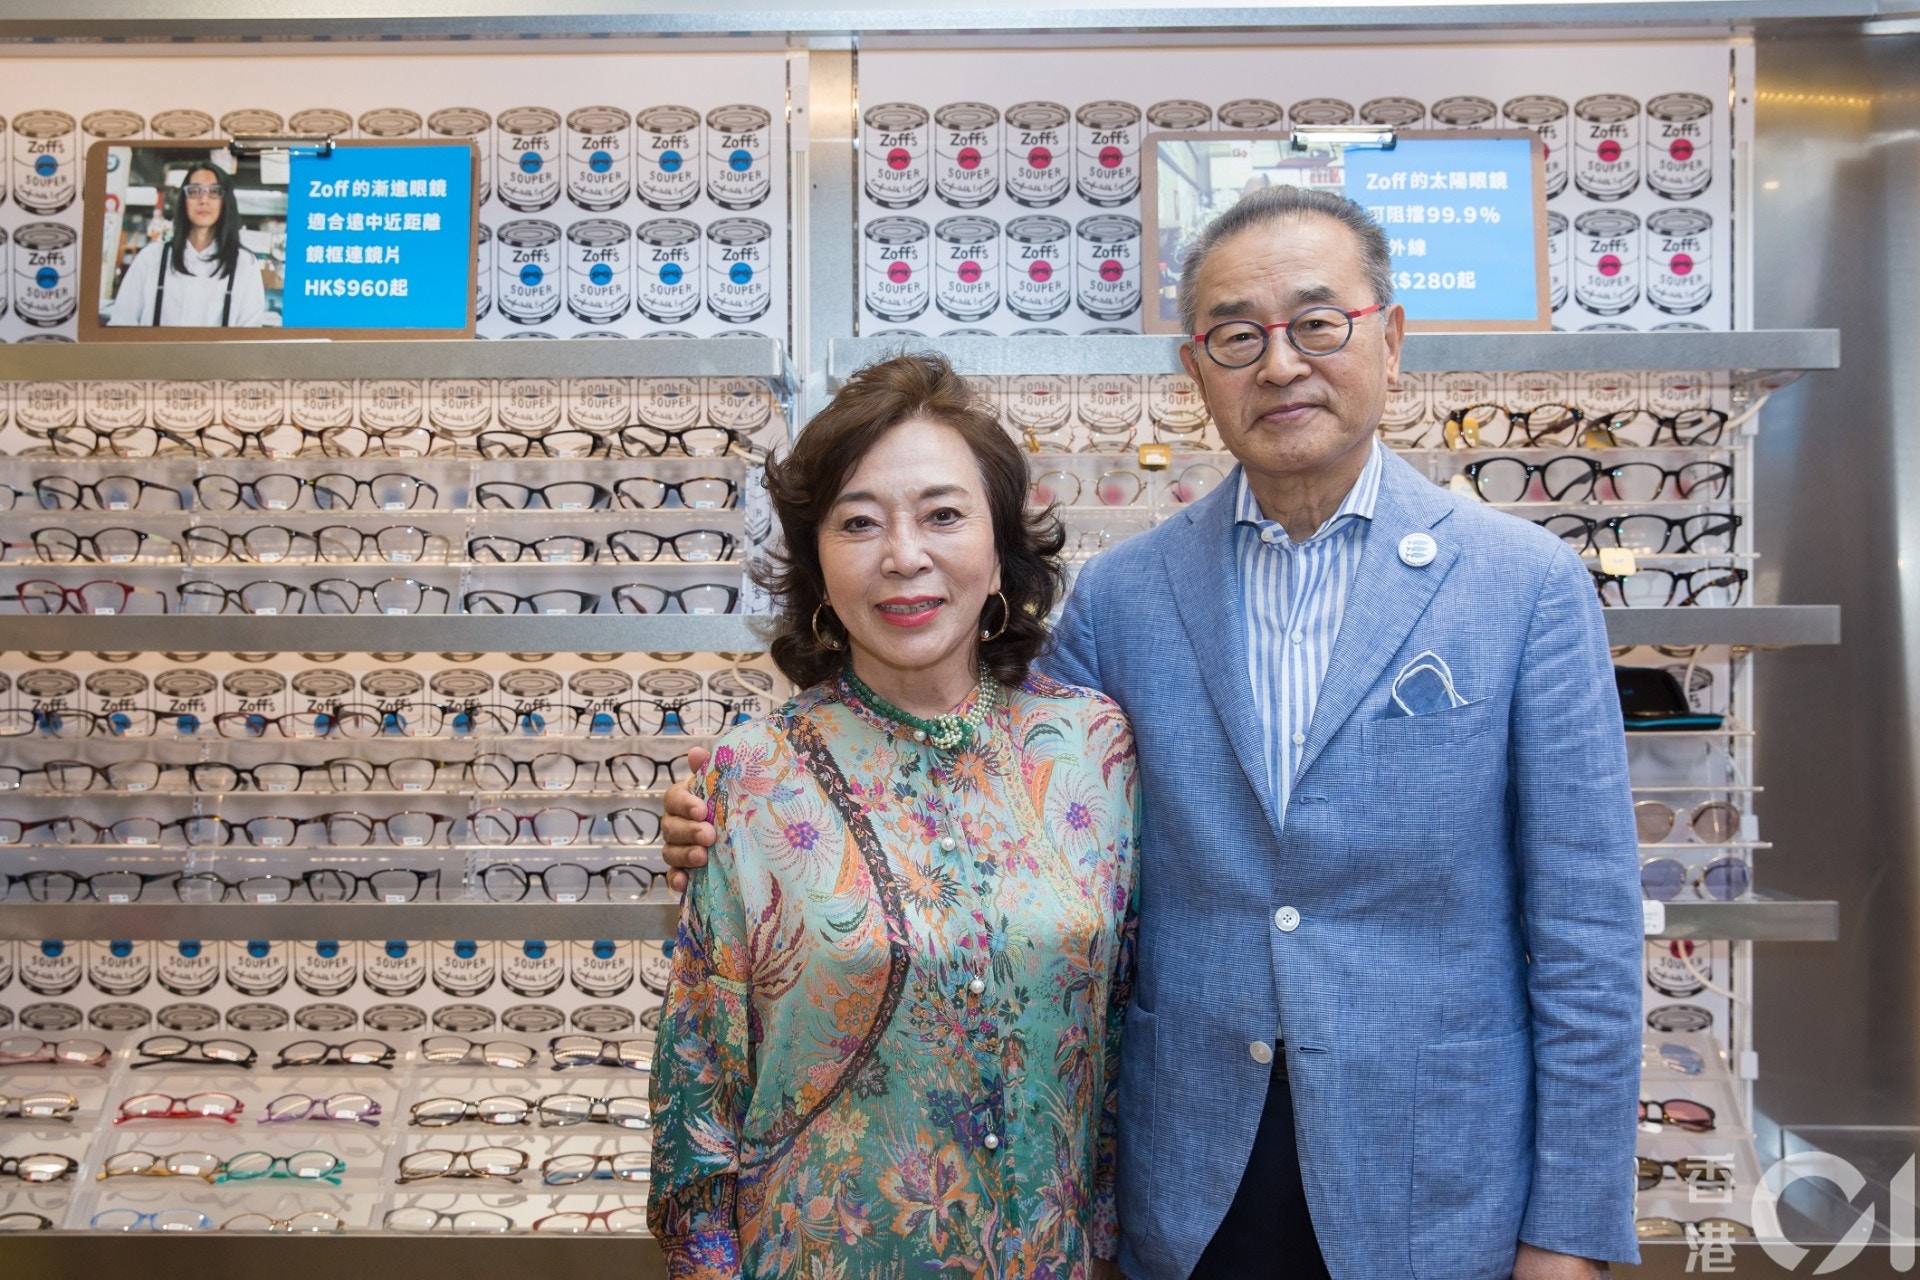 60歲創業建眼鏡王國zoff經營之神打破行規棄 日本製造 香港01 專題人訪